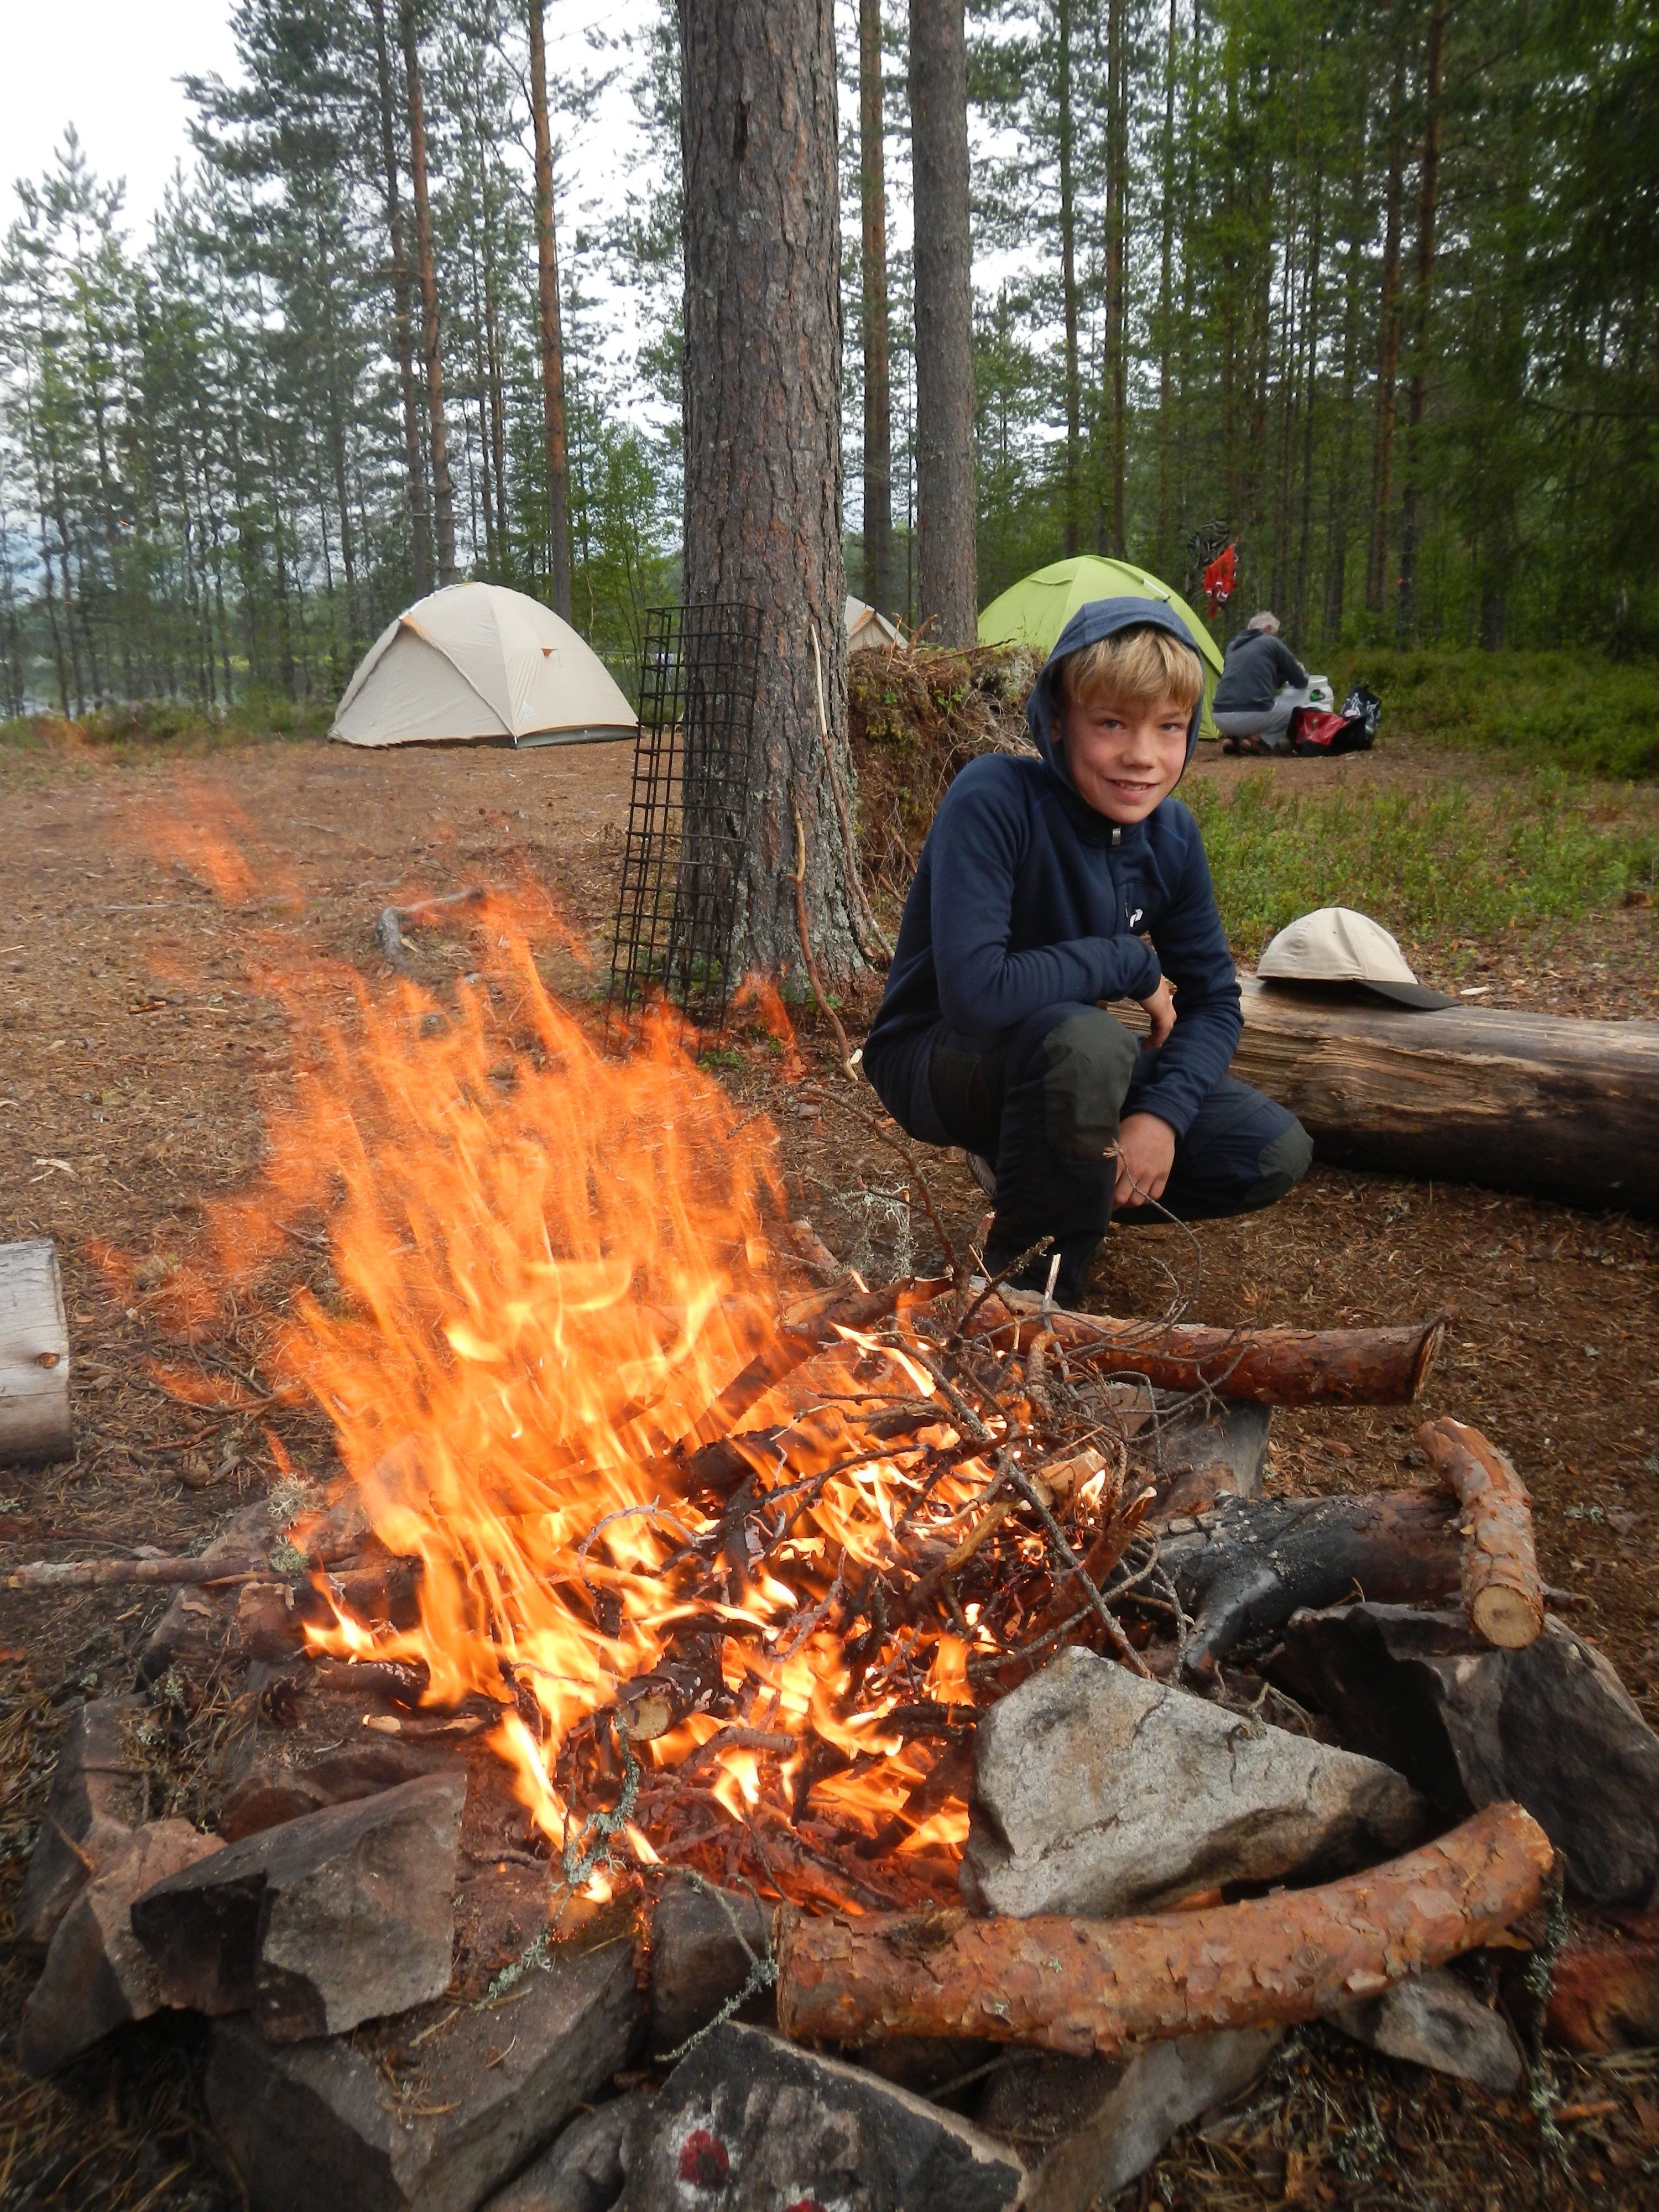 Schweden Urlaub mit Kindern - Familienurlaub Schweden - Camping mit Kindern am Lagerfeuer